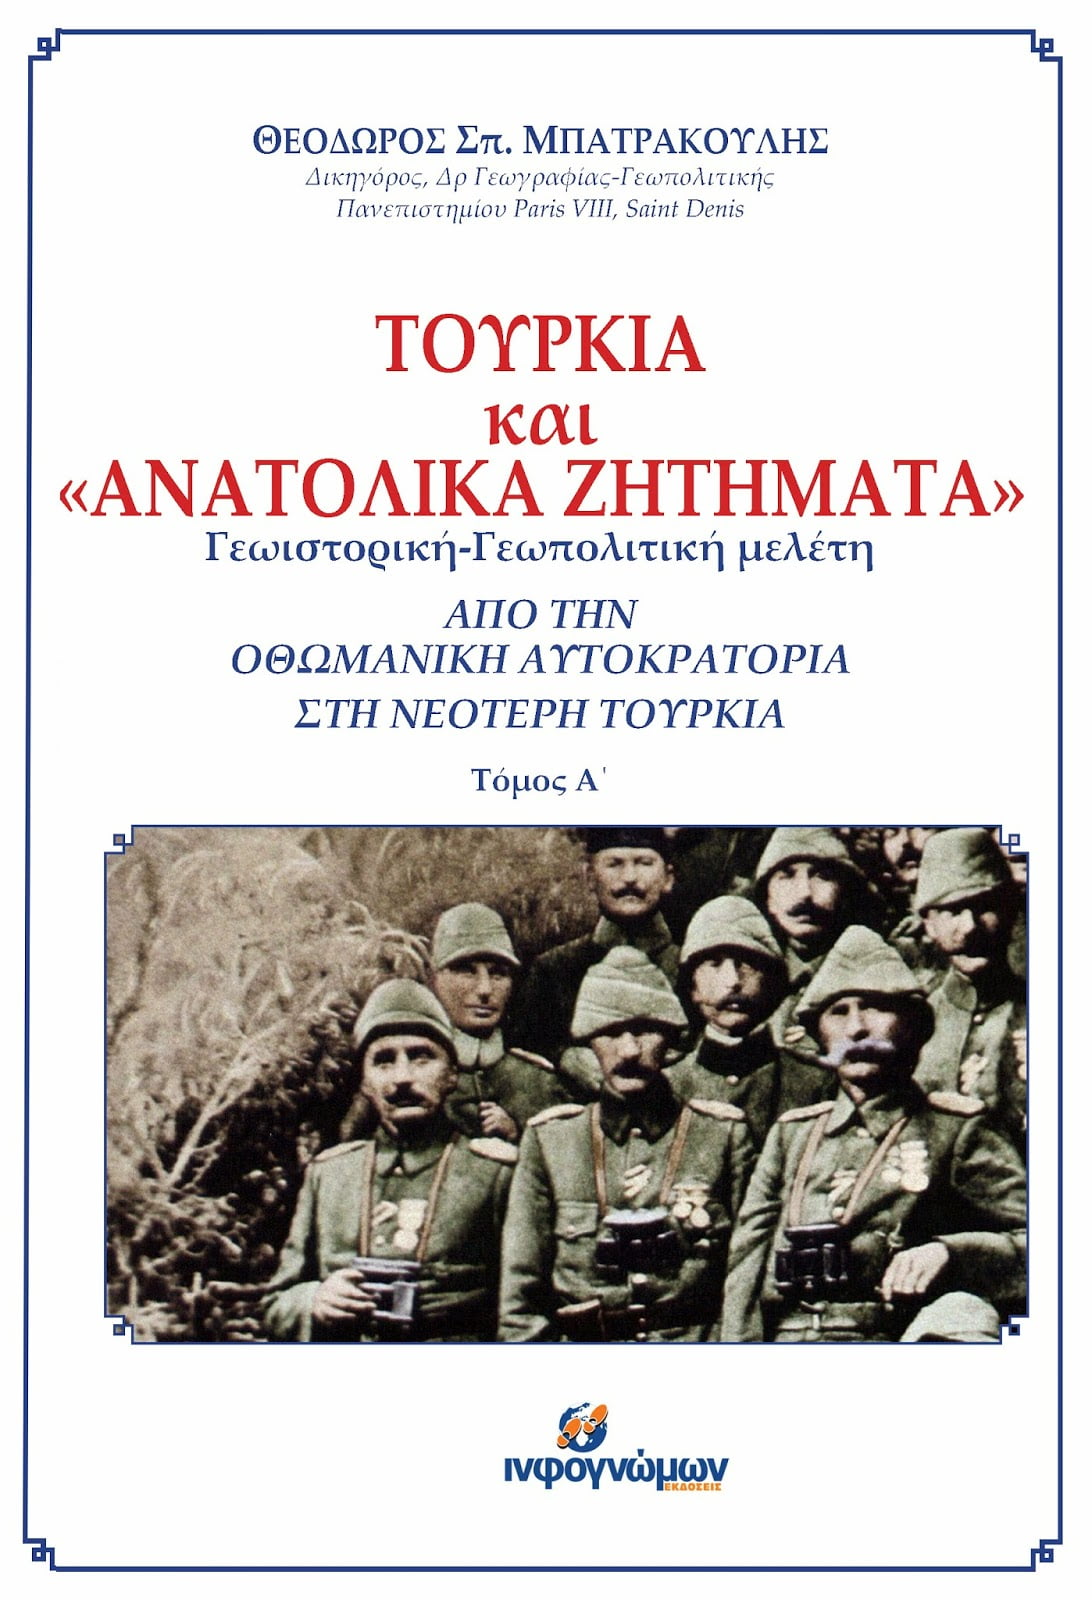 Παρουσίαση του βιβλίου “Τουρκία και Ανατολικά Ζητήματα” του Θ. Μπατρακούλη στο Σύλλογο Κωνσταντινουπολιτών, στην Καλλιθέα